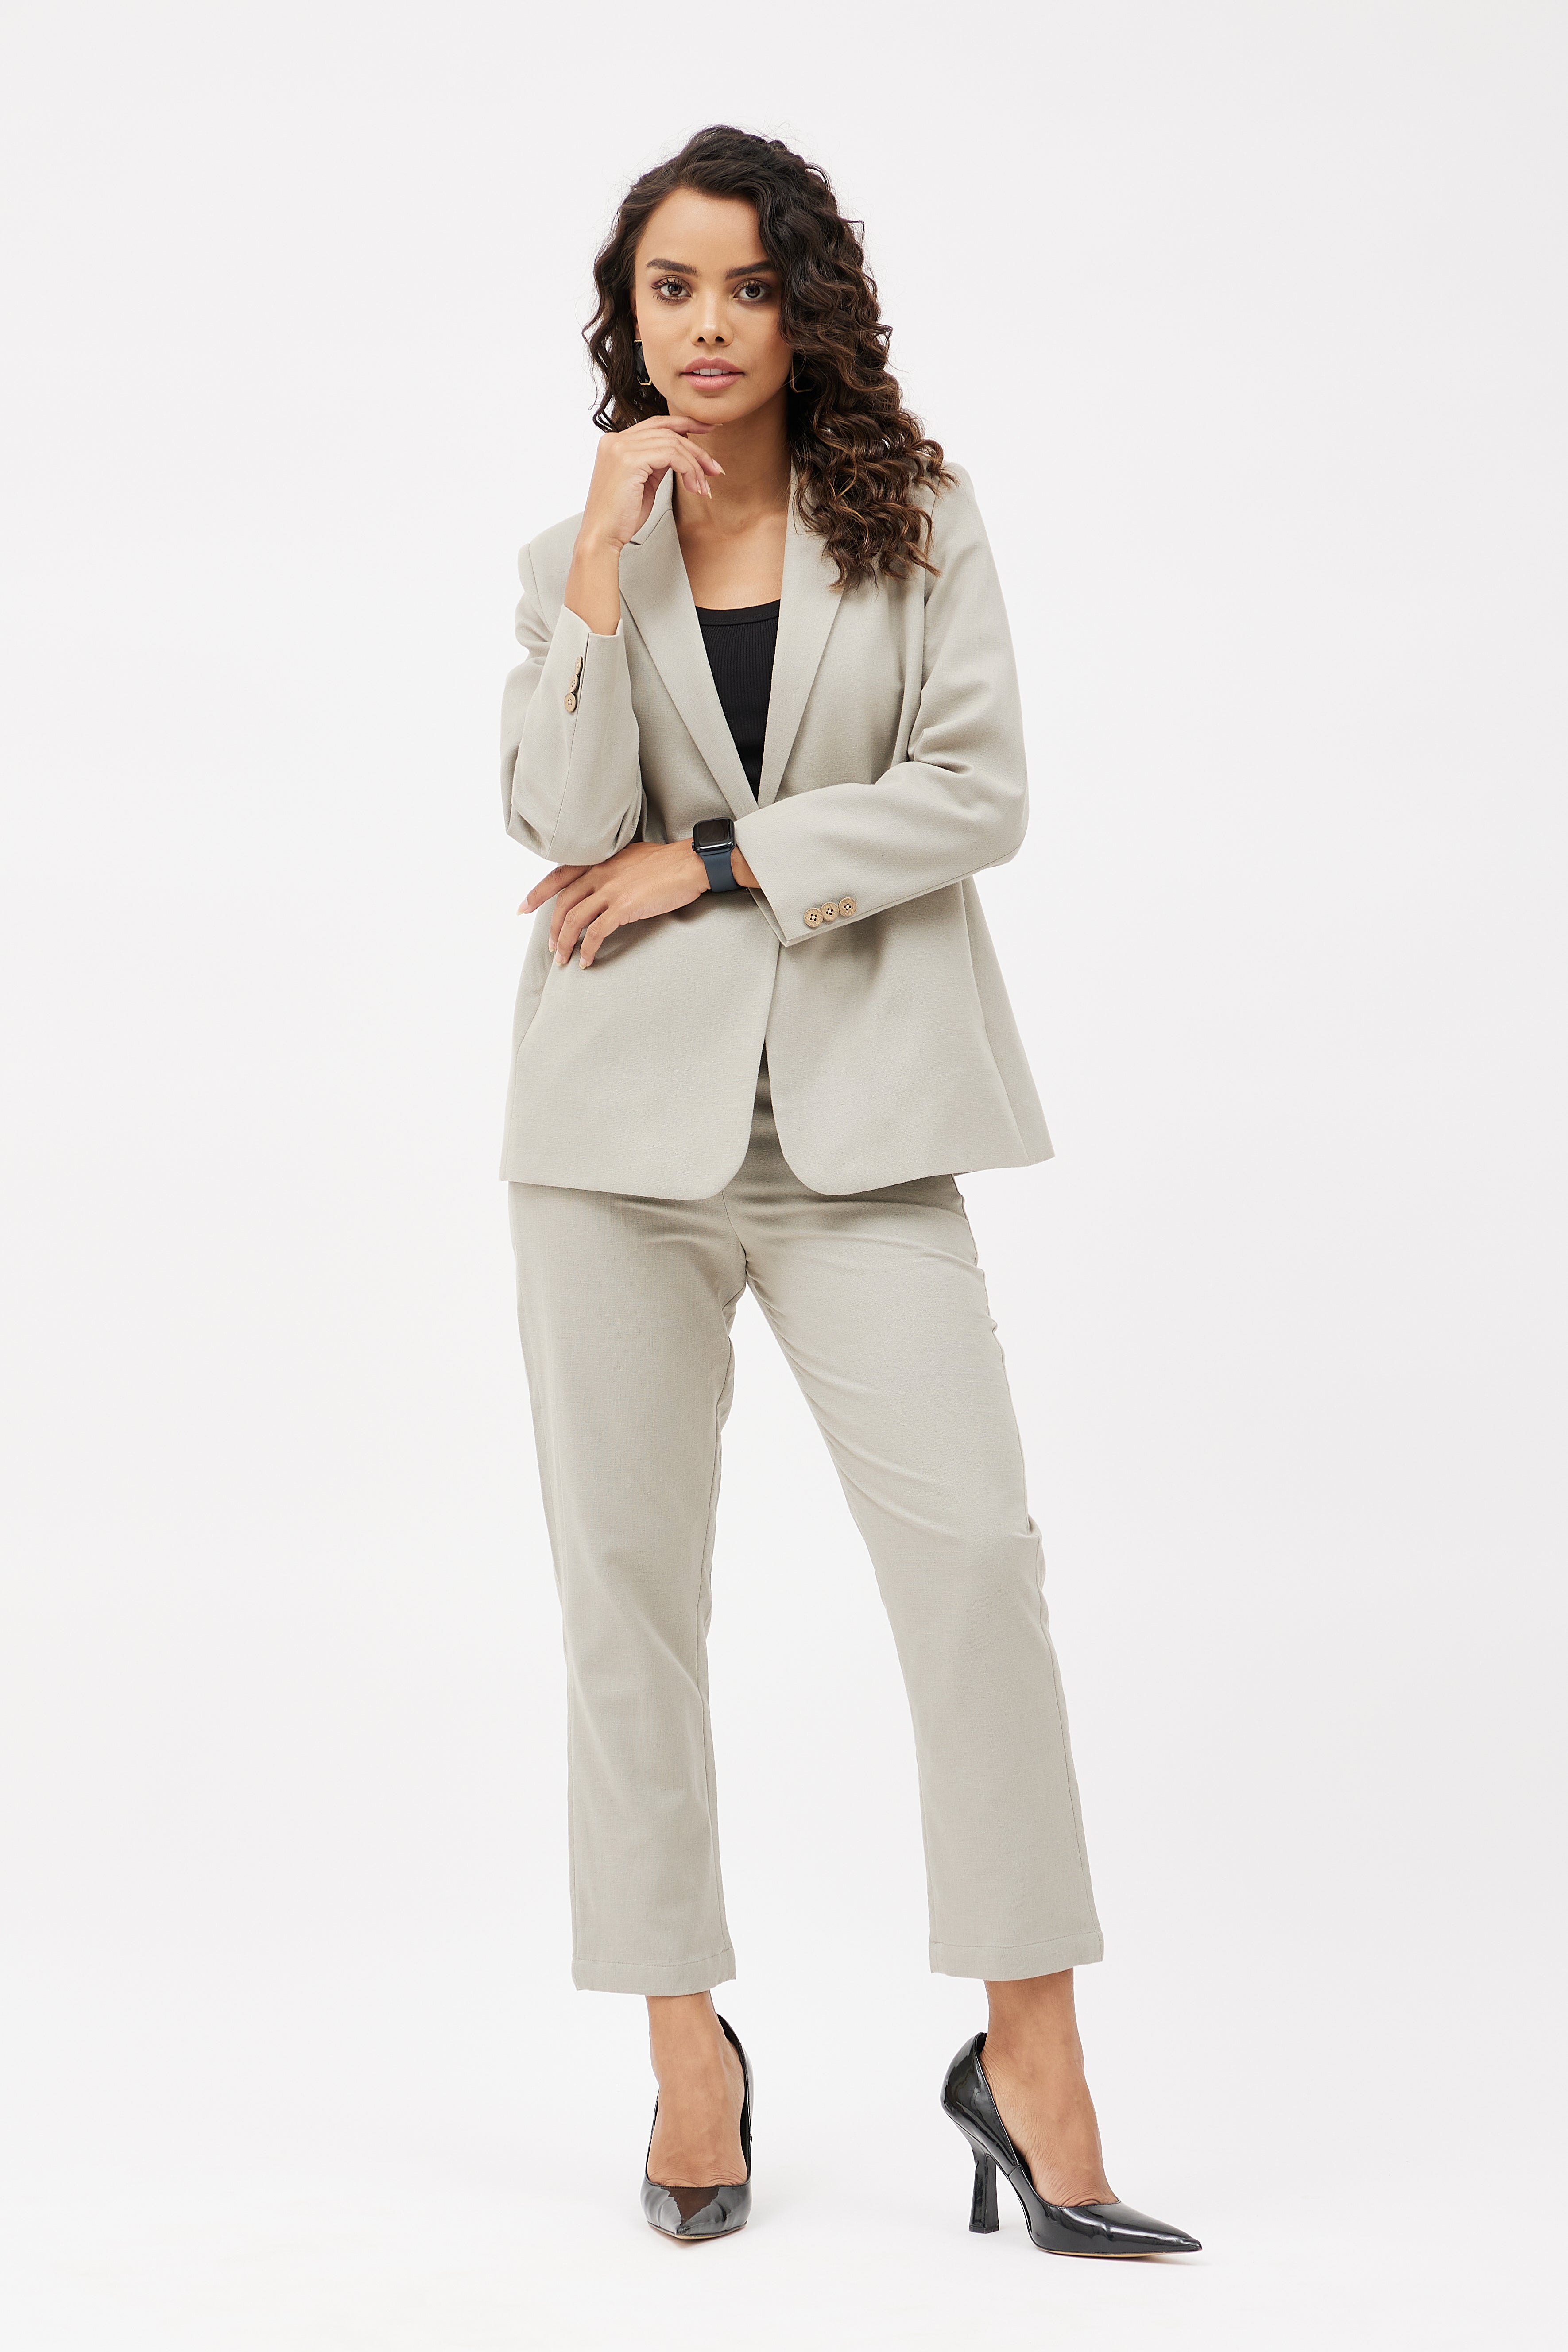 Grey Business Suit for Women  Office Uniform  Uniform Tailor